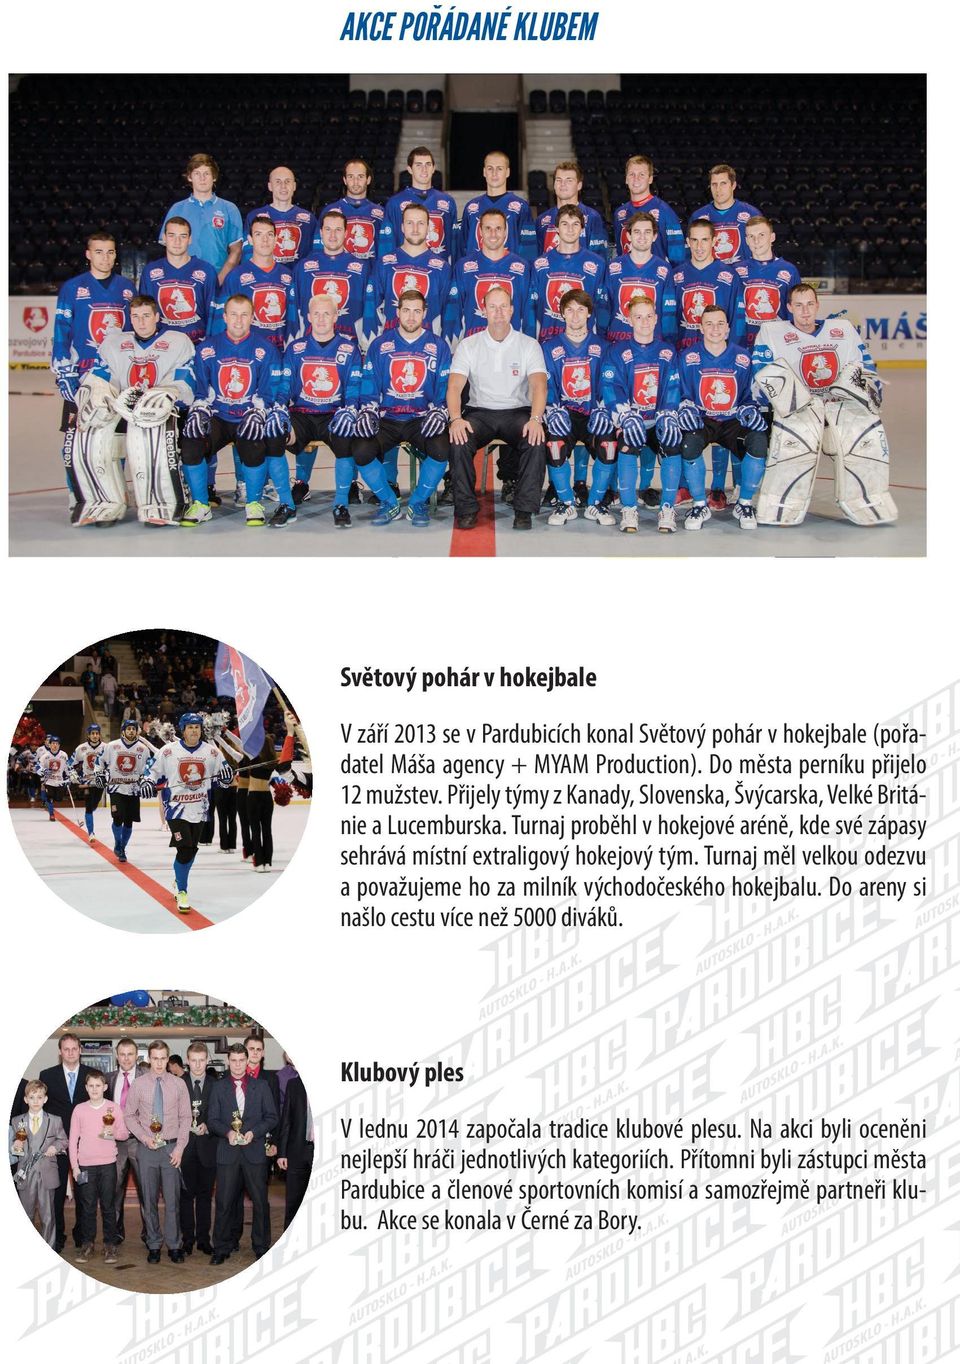 Turnaj proběhl v hokejové aréně, kde své zápasy sehrává místní extraligový hokejový tým. Turnaj měl velkou odezvu a považujeme ho za milník východočeského hokejbalu.